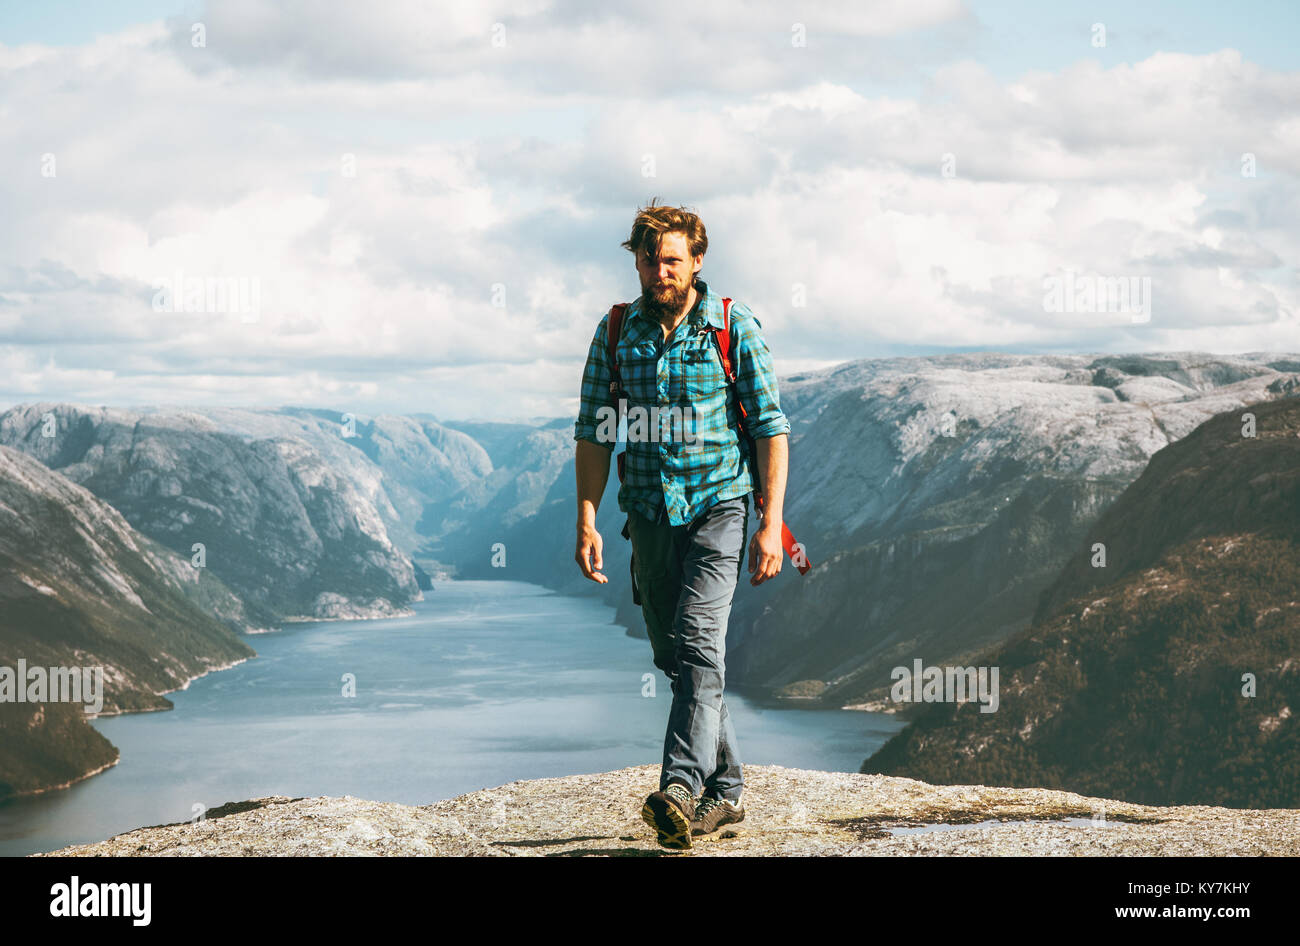 Viaggio in Norvegia Uomo con zaino escursionismo Lifestyle concetto avventura outdoor attivo vacanze estive Foto Stock